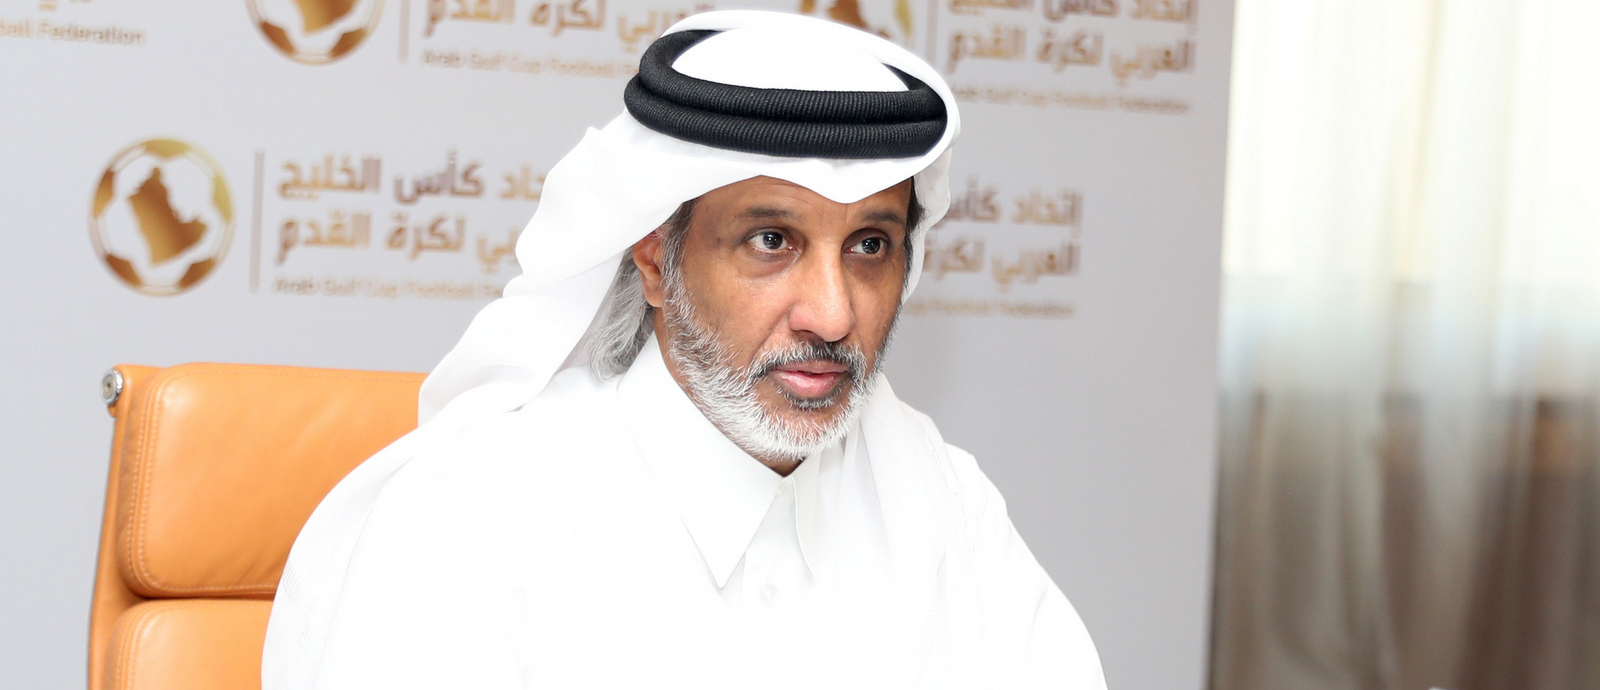 Sheikh Hamad bin Khalifa bin Ahmed Al Thani